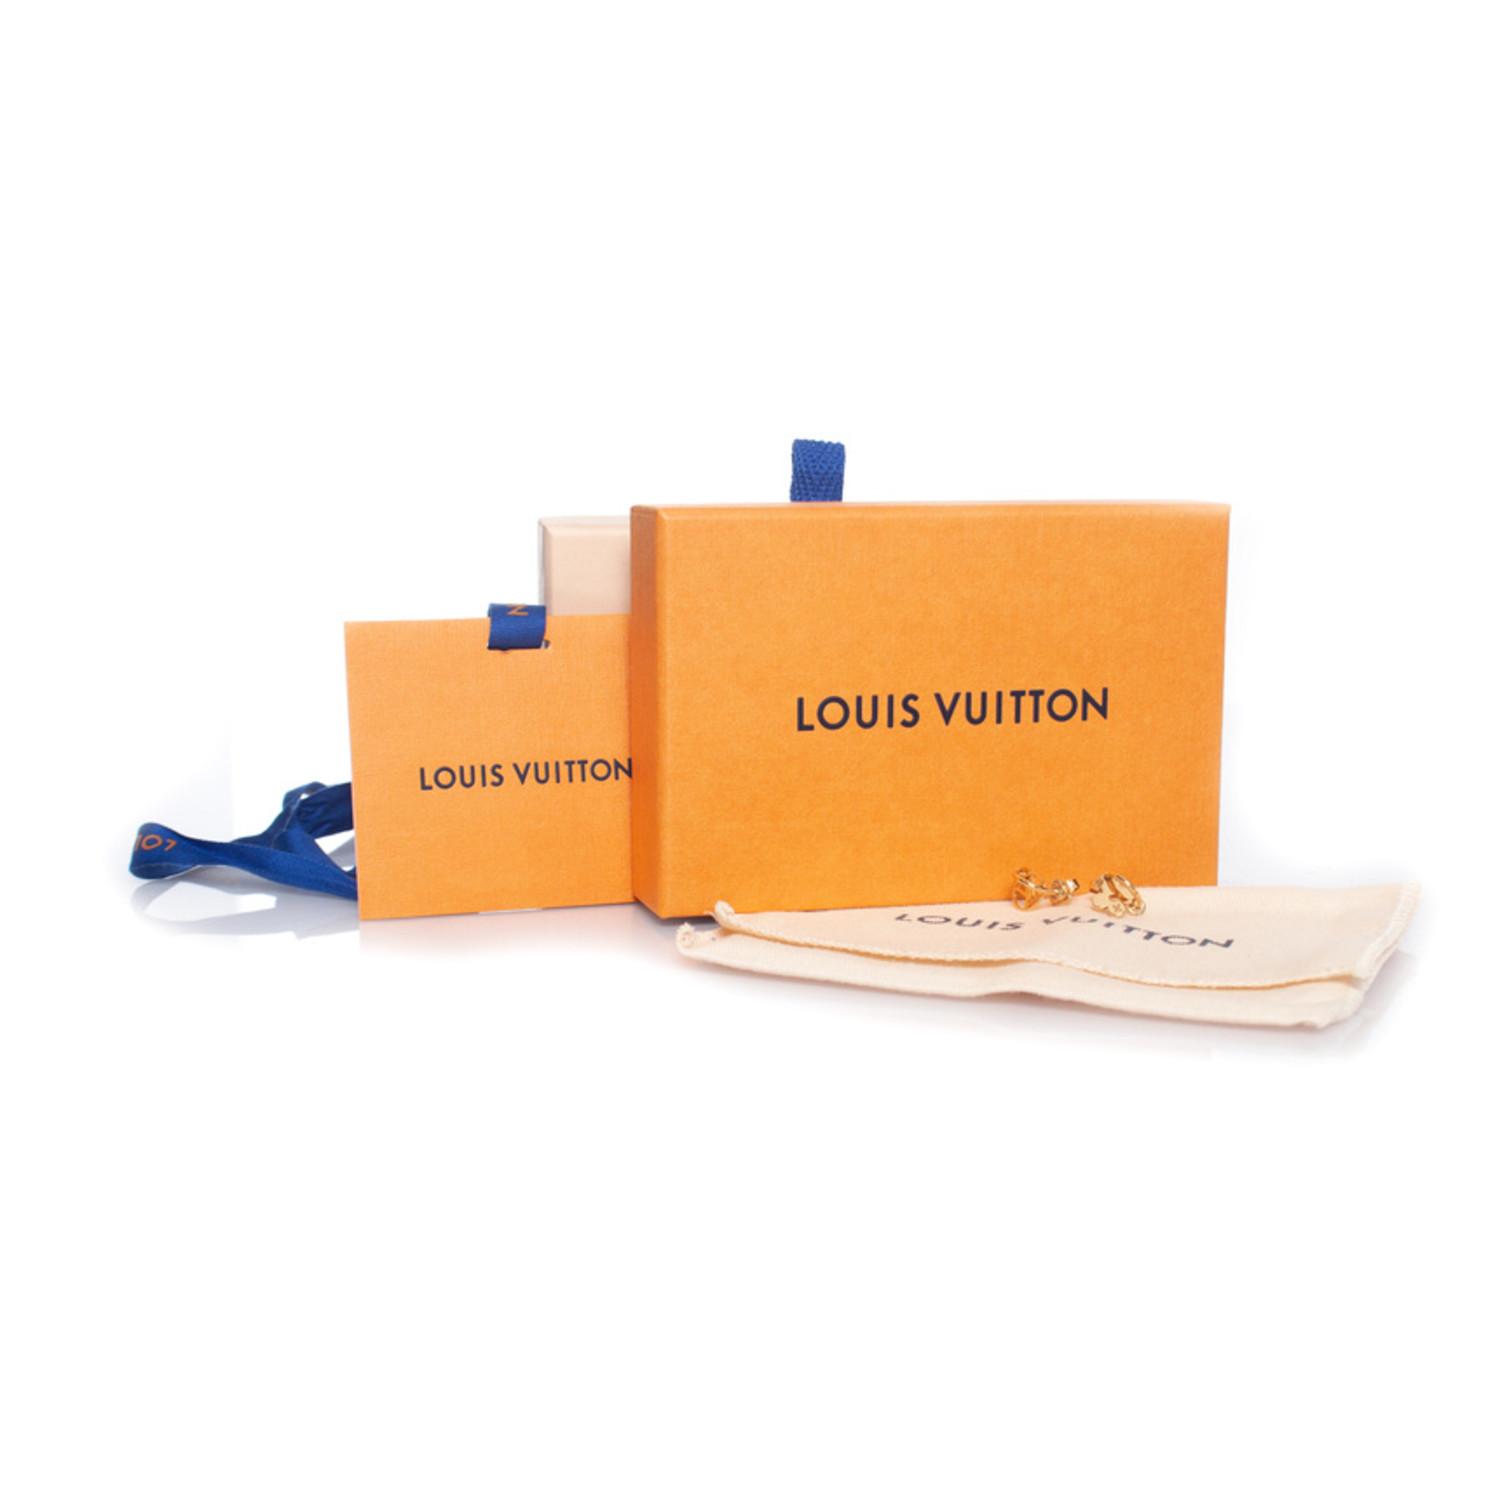 Louis Vuitton - Boucles d'oreilles Blooming - Oorbellen - Catawiki